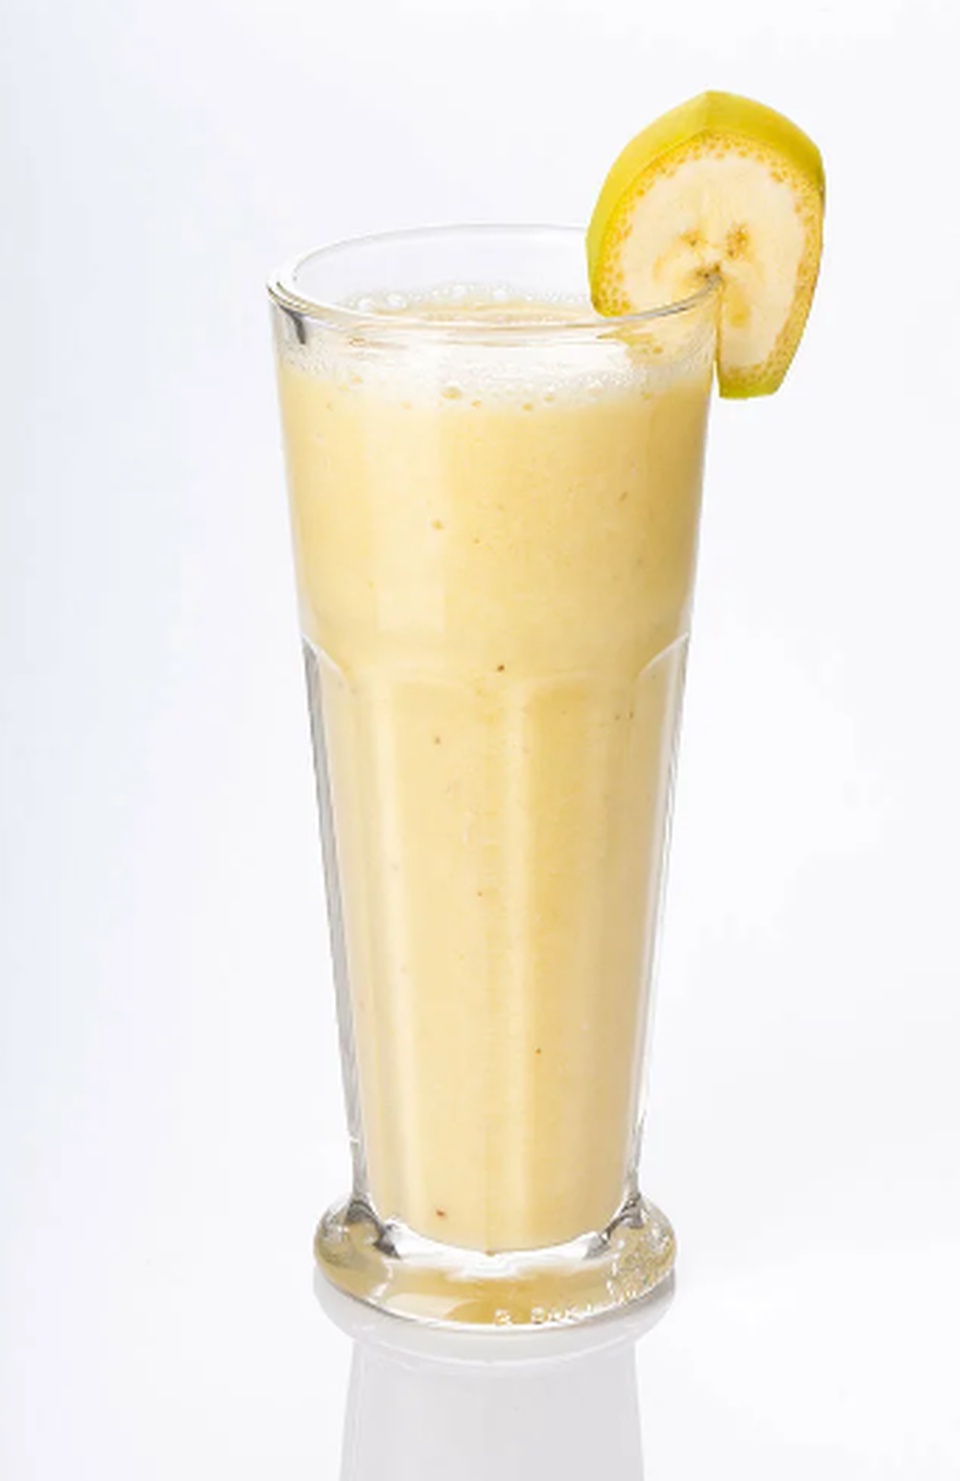 Молочный коктейль с бананом - 160 ₽, заказать онлайн.